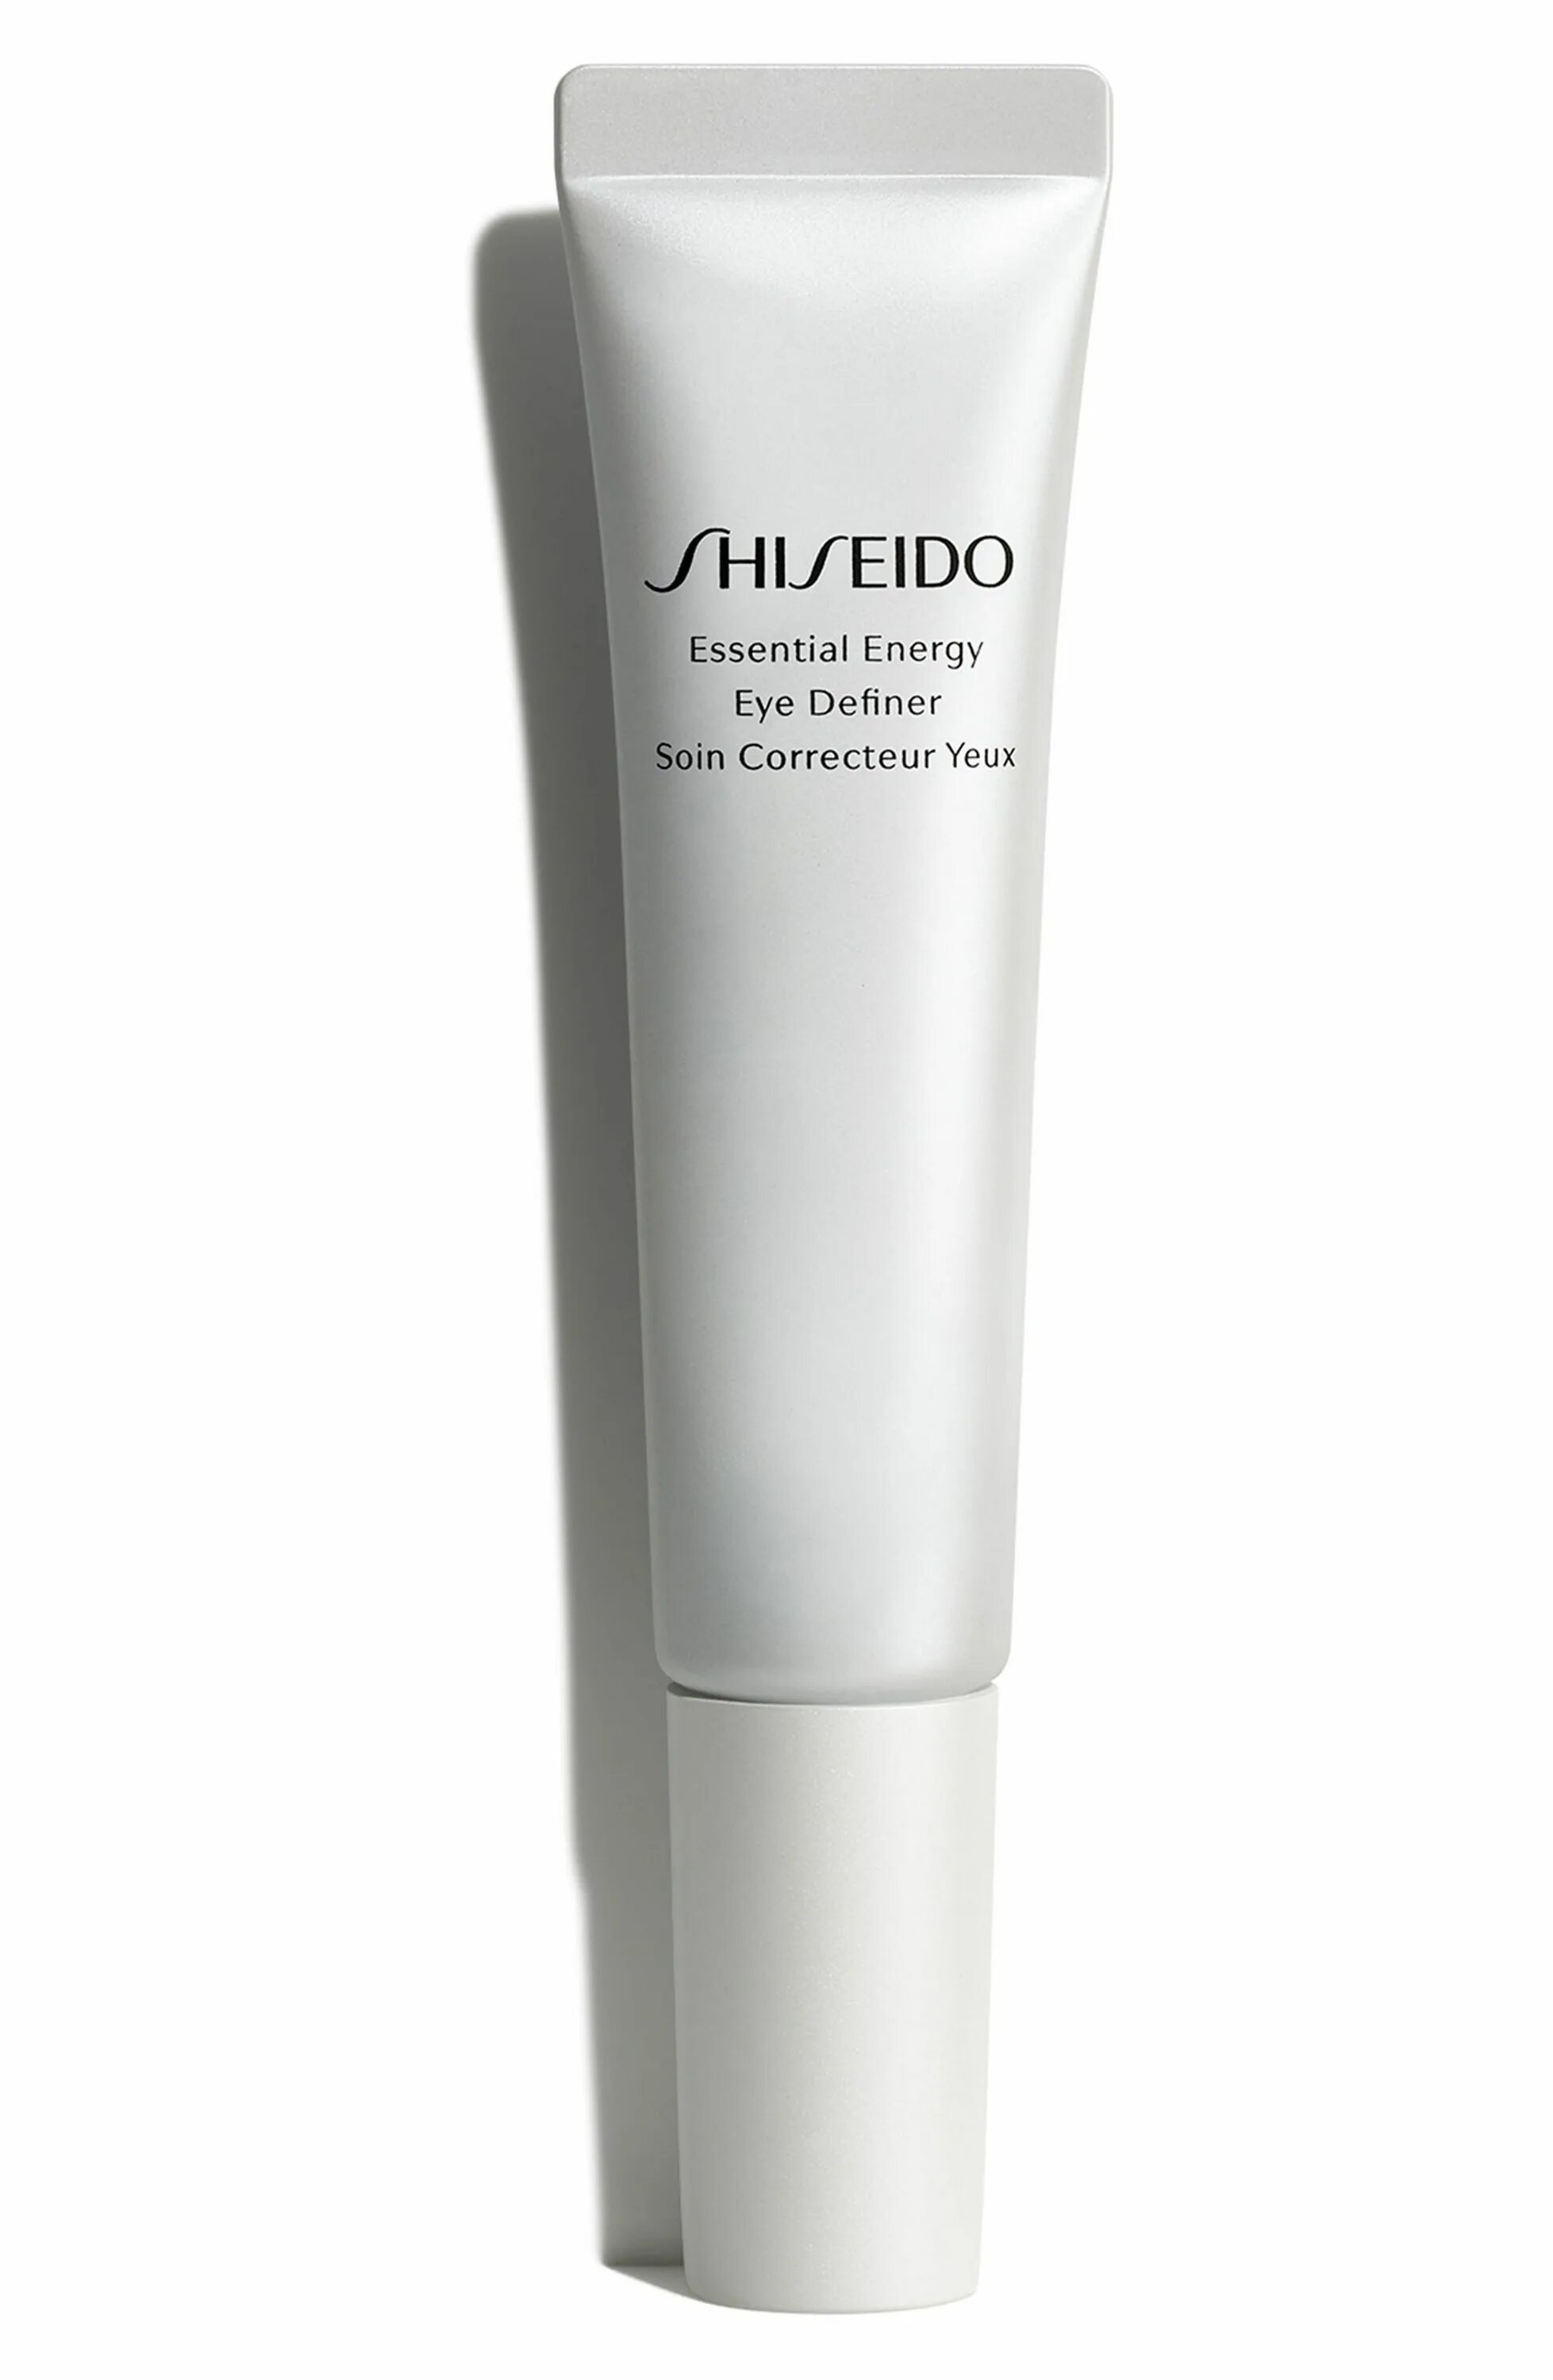 Shiseido energy. Крем Shiseido Essential Energy. Шисейдо Essential Energy Eye Definer. Shiseido preparation Essential Energy Eye Definer. Energetic Eye Lift многофункциональный мужской крем для контура глаз 15 мл Nirvel.